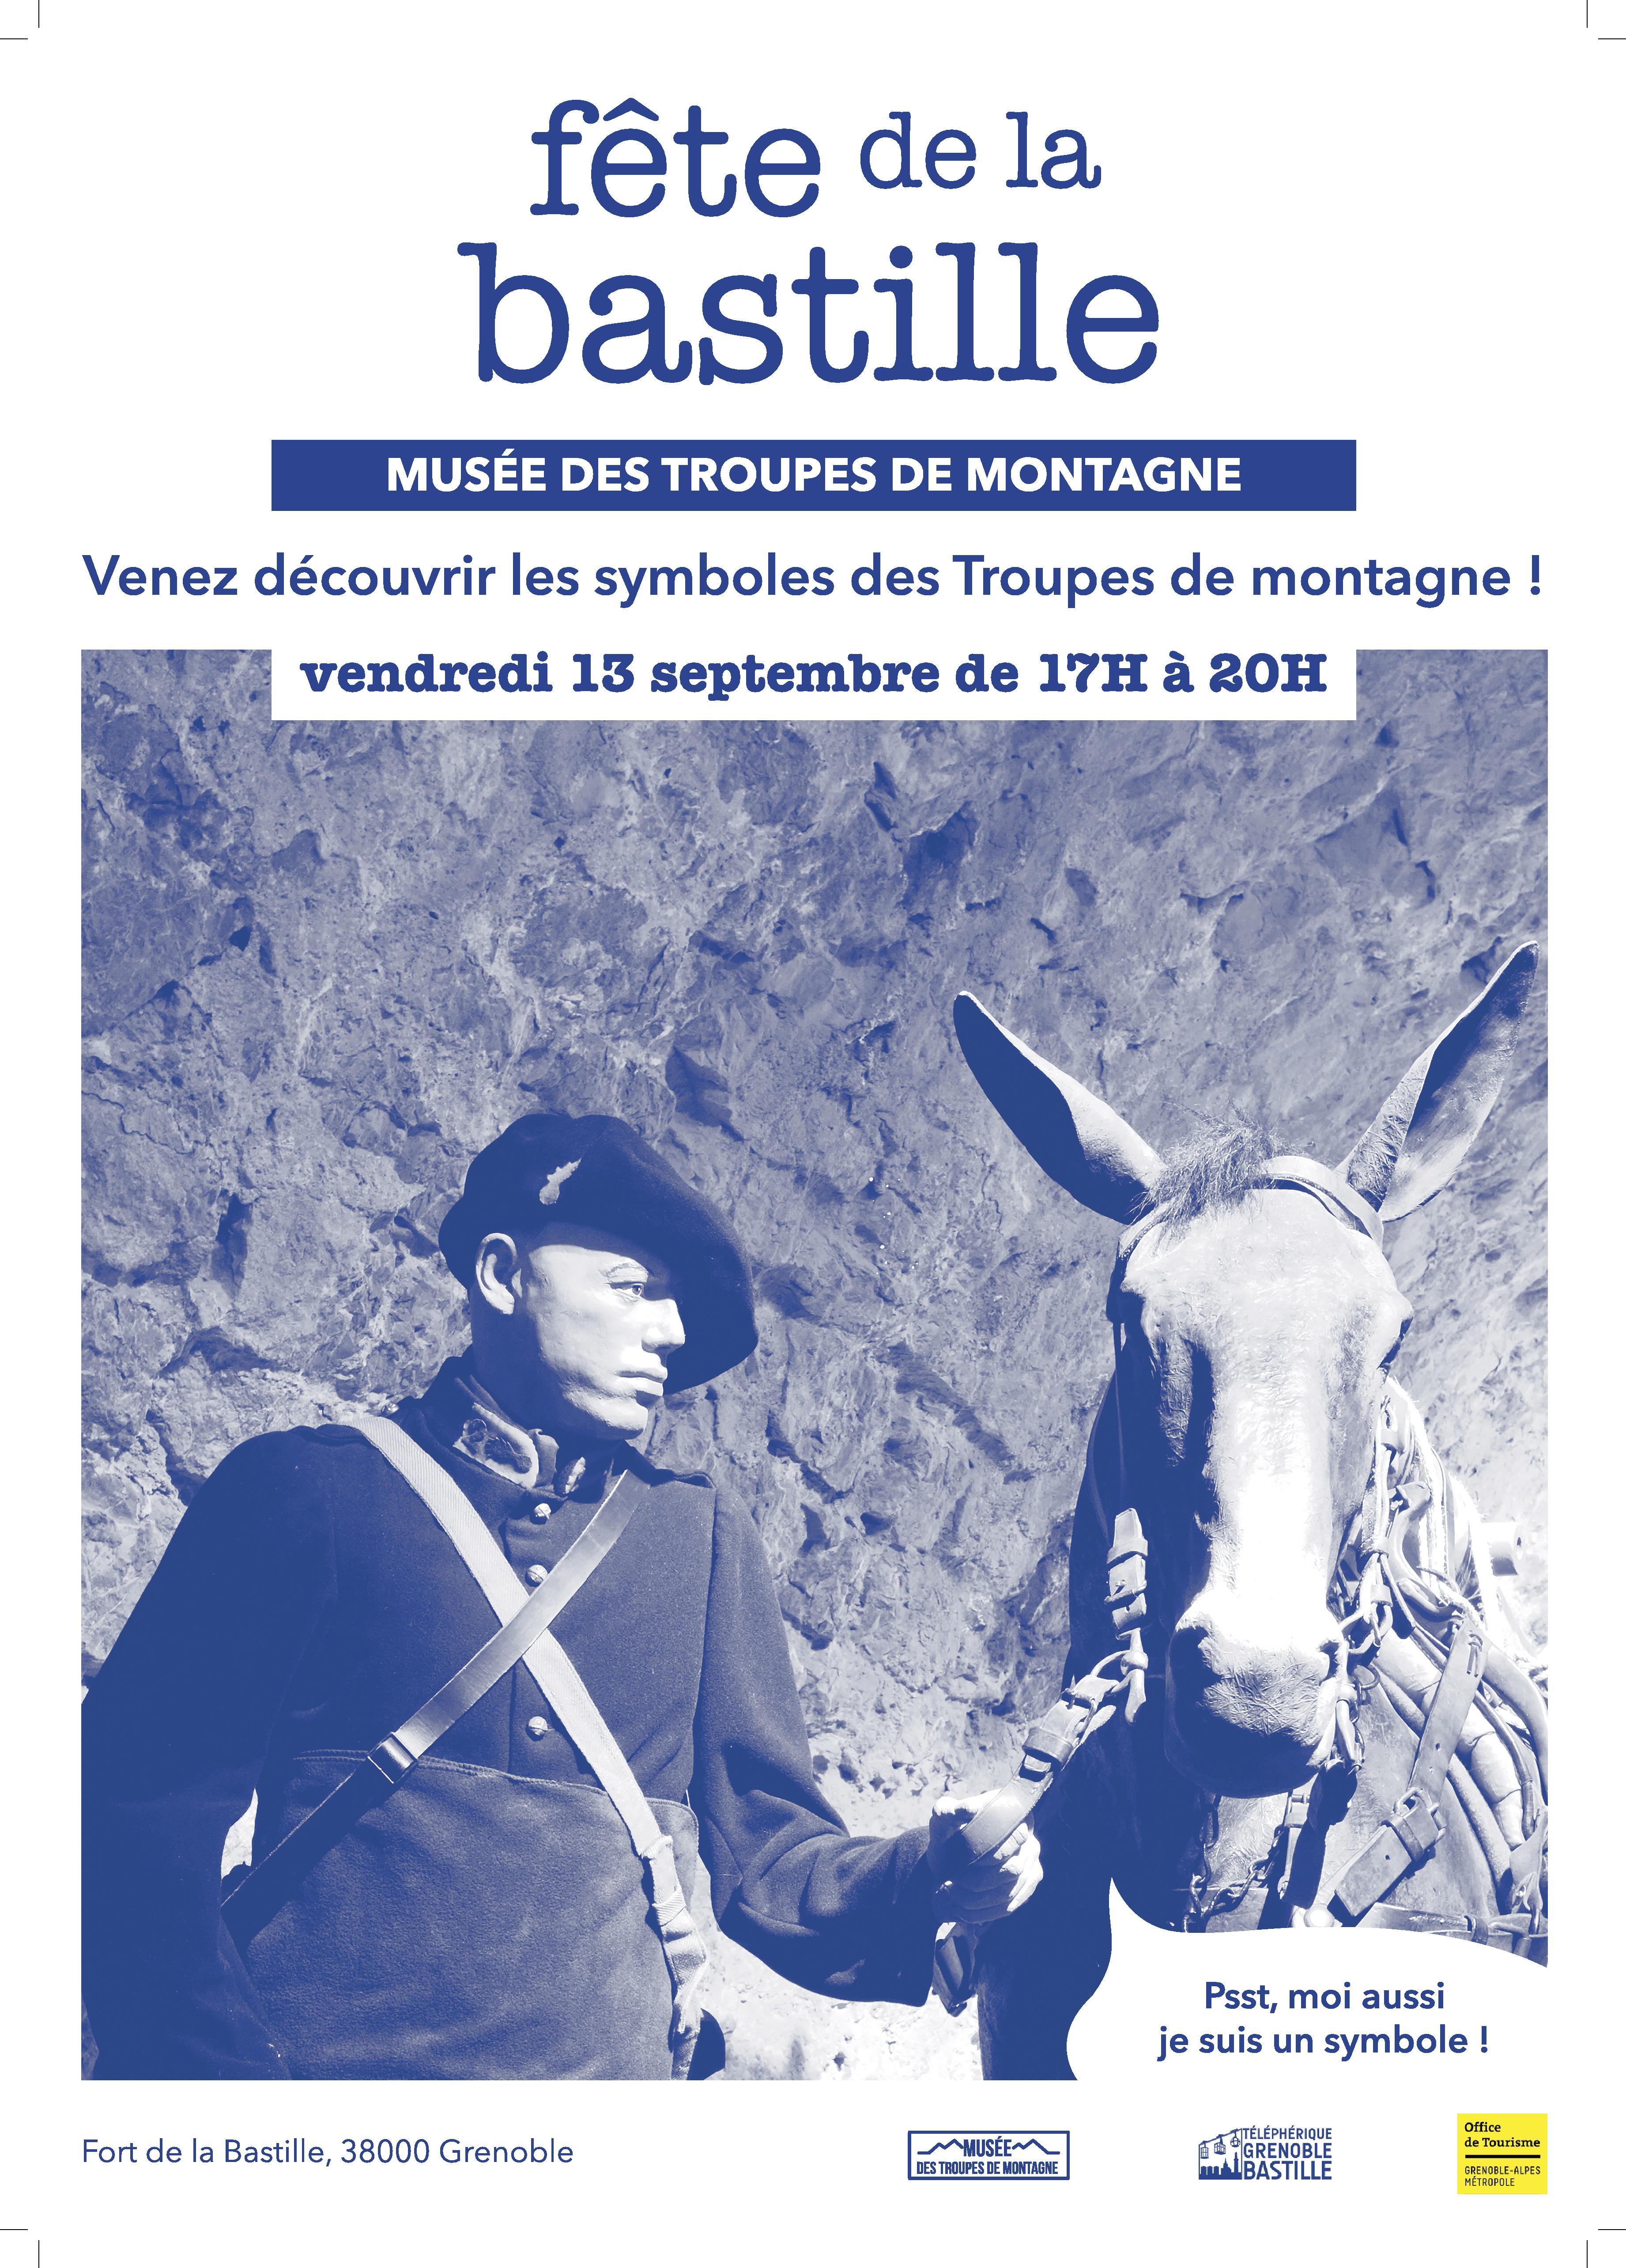 Affiche pour la Fête de la Bastille au Musée des Troupes de montagne, qui représente un soldat avec un mulet.